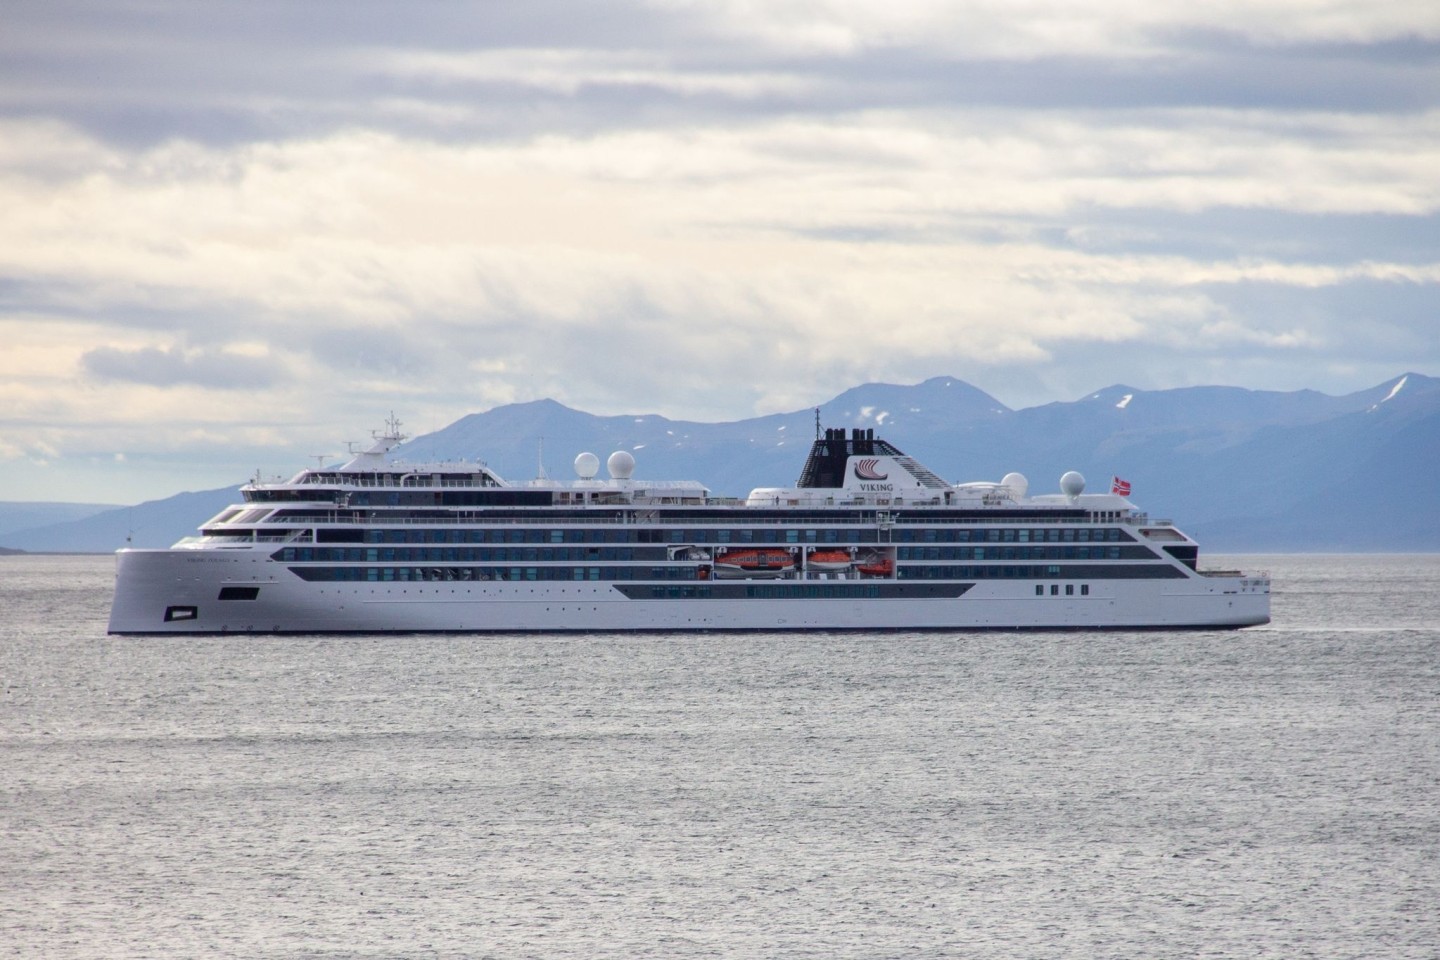 Das Kreuzfahrtschiff «Viking Polaris» liegt vor Ushuaia. Beim Aufprall einer gewaltigen Welle auf das Kreuzfahrtschiff auf Antarktis-Tour sind ein Fahrgast getötet und vier weitere verlet...